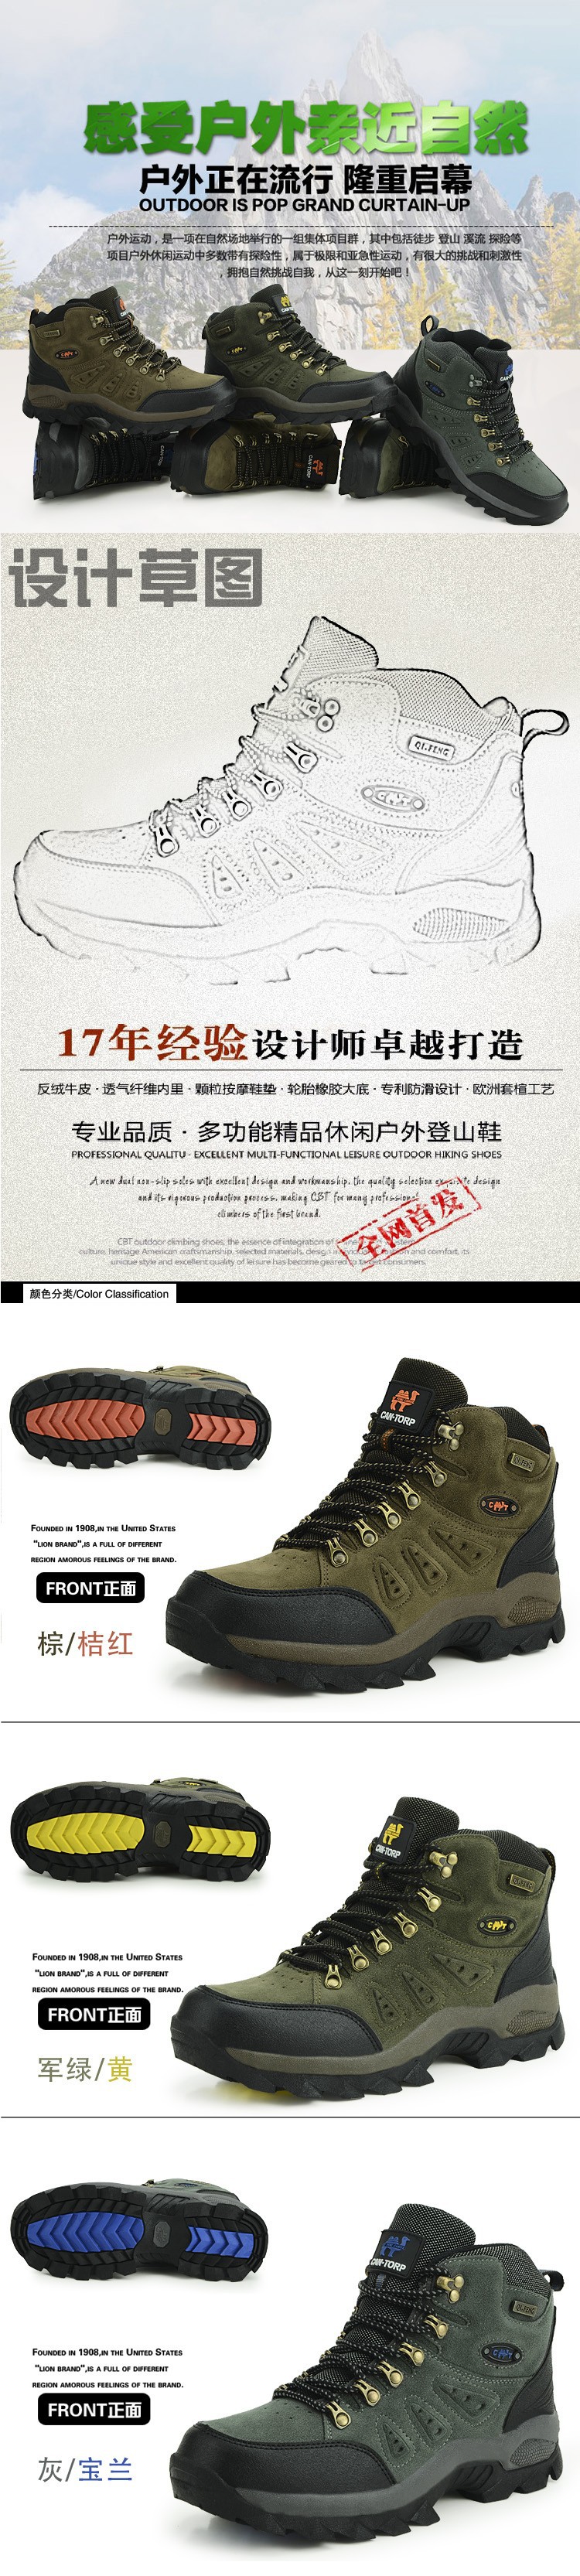 hiking shoes hs34d90 (3)